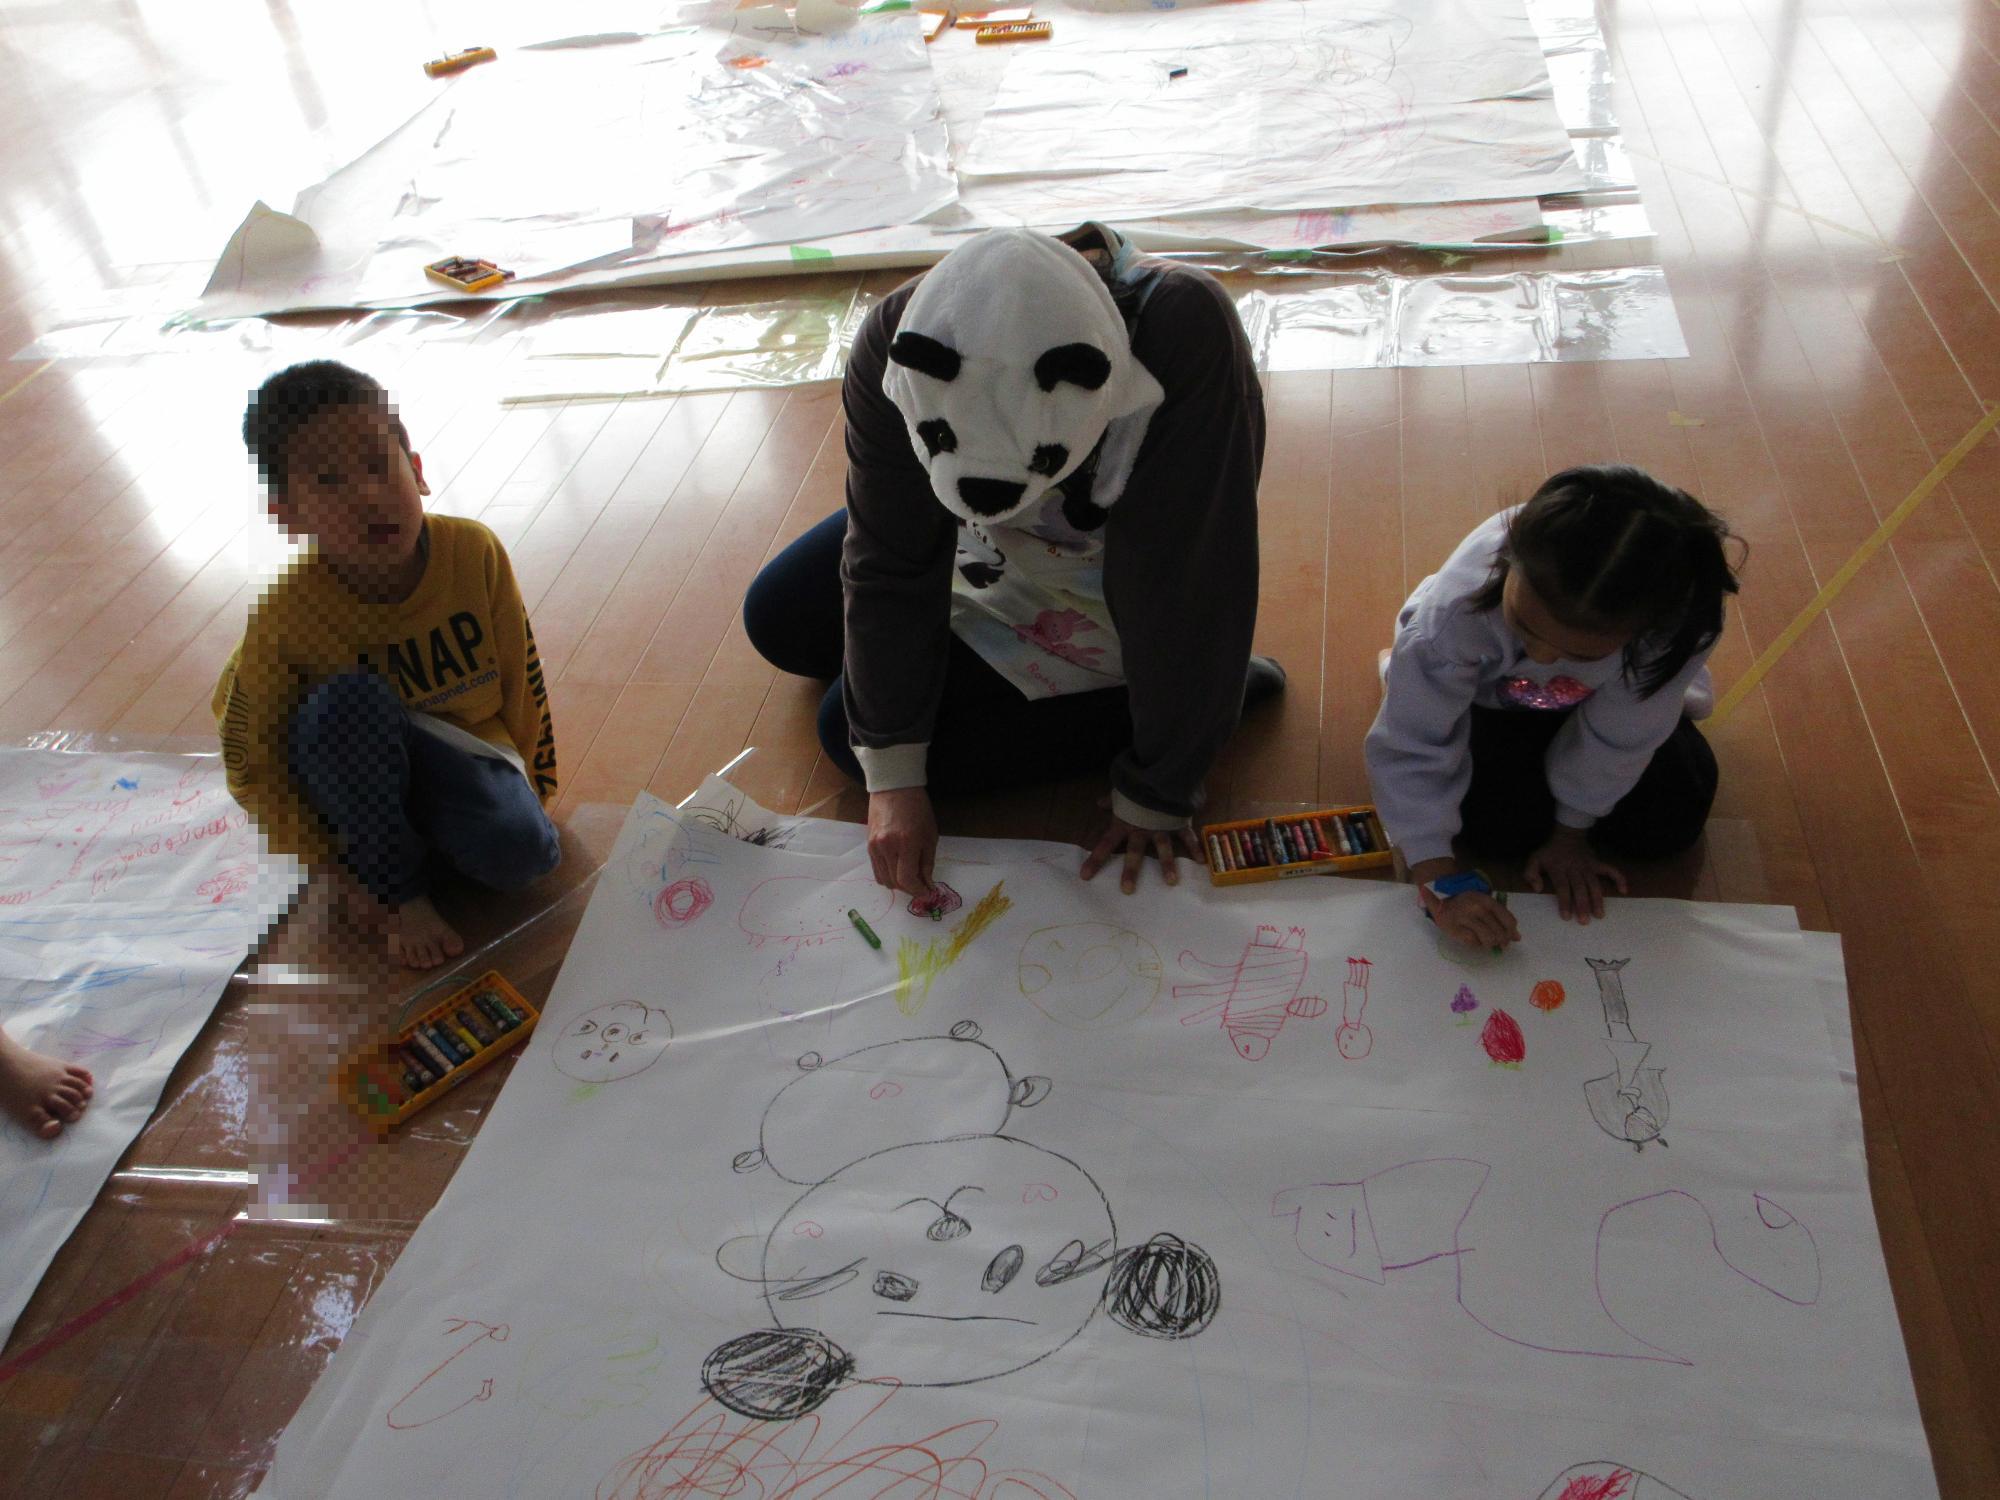 パンダに変装した先生がパンダを描いていました。